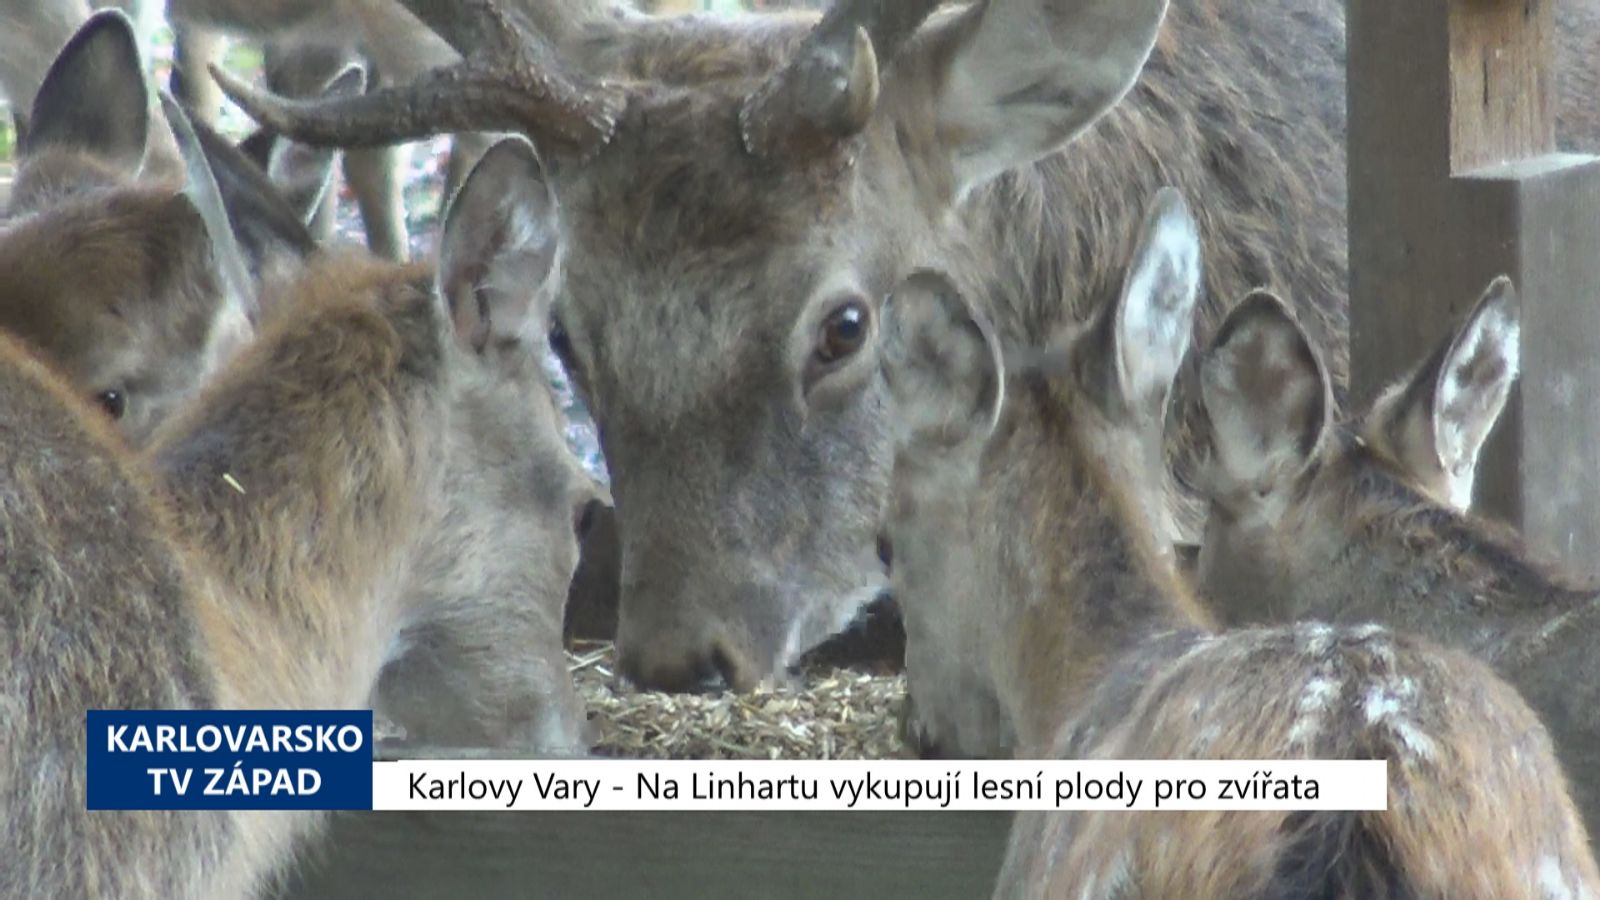 Karlovy Vary: Na Linhartu vykupují lesní plody pro zvířata (TV Západ)